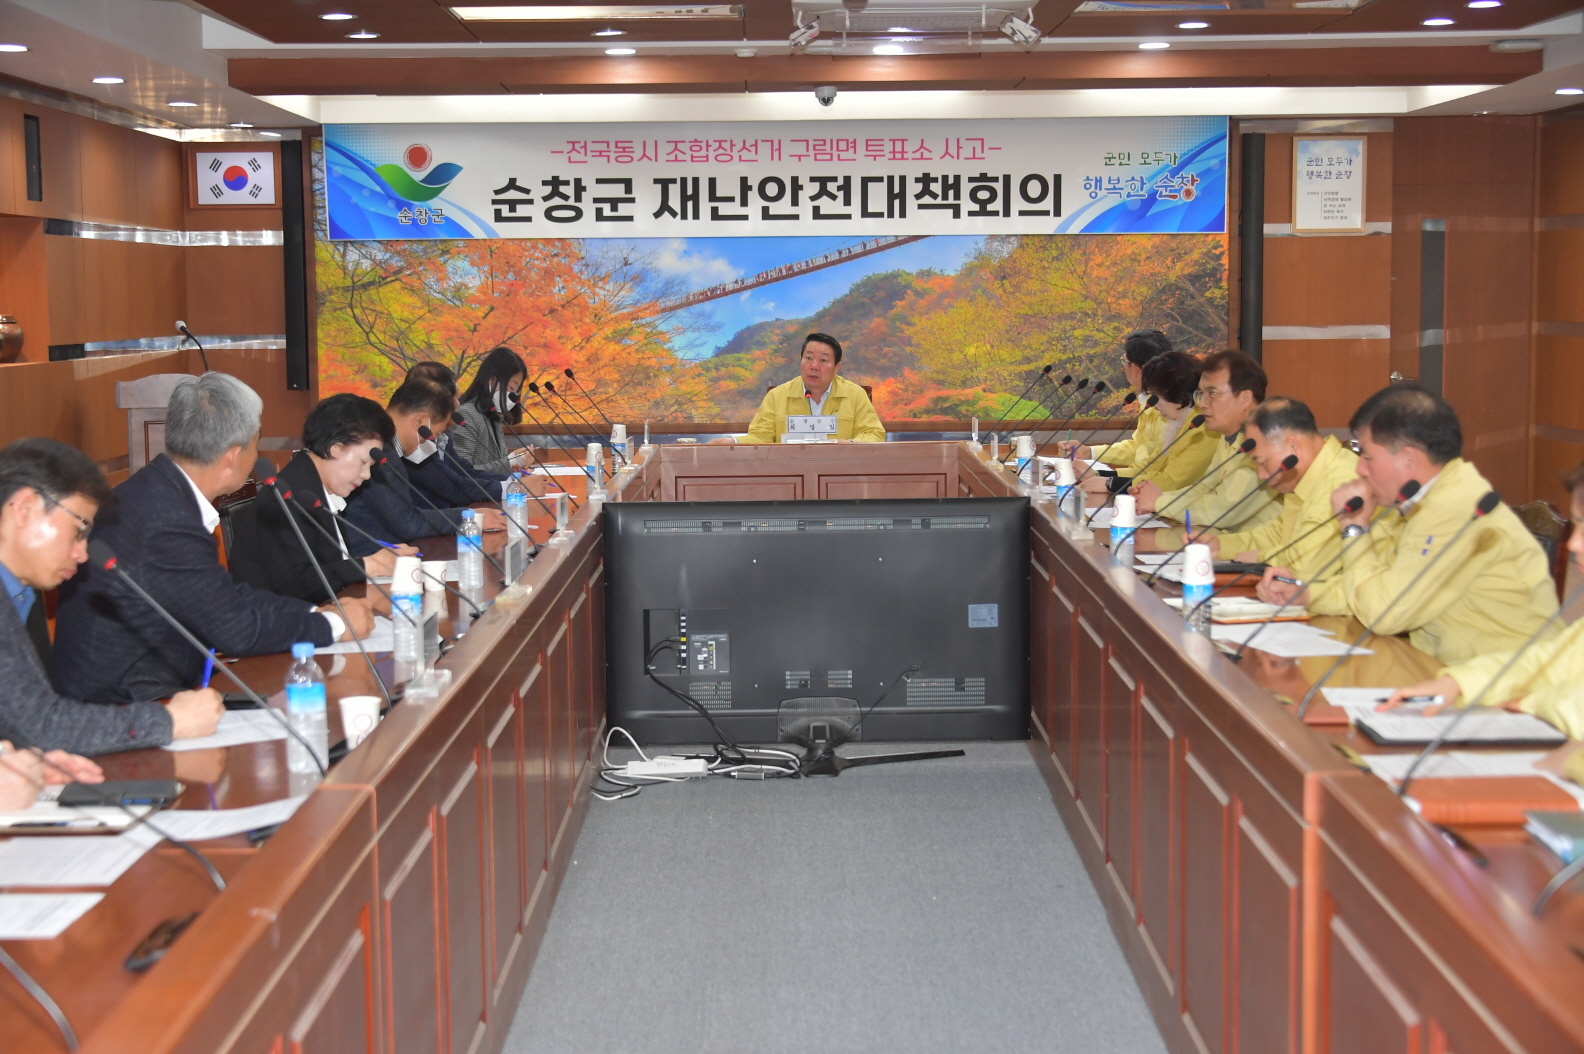 전북 순창군은 9일 오전 재난안전대책본부 회의를 열고 투표소 사고 피해자 4명에 대한 장례비로 500만원씩 지급하기로 했다. 순창군 제공